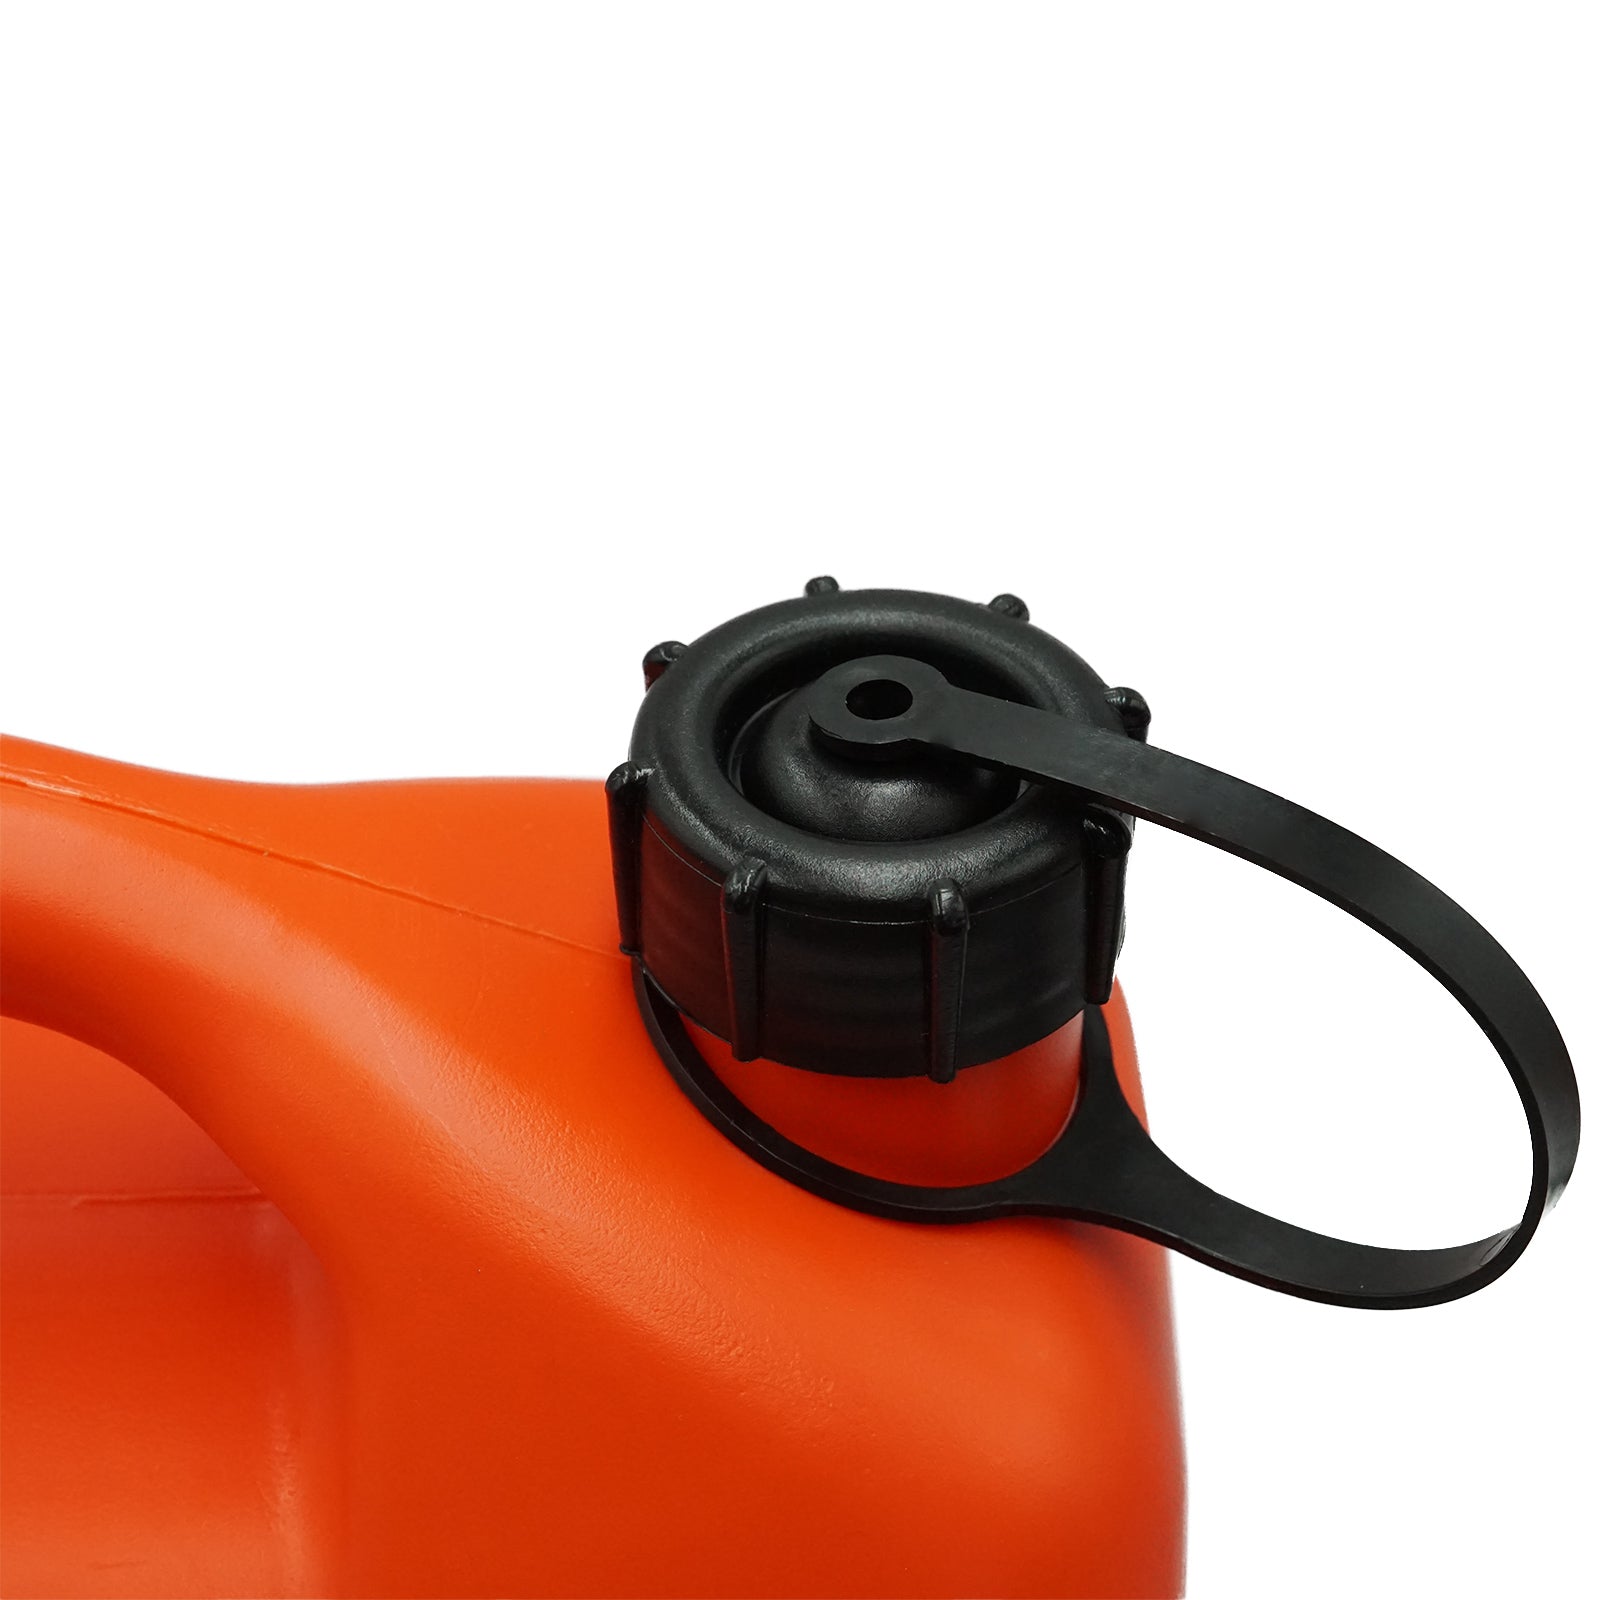 Benzinkanister Metall GGVS mit Sicherungsstift - 20 Liter (shock red) mit  Ausgießer flexibel - CRAFTMAX